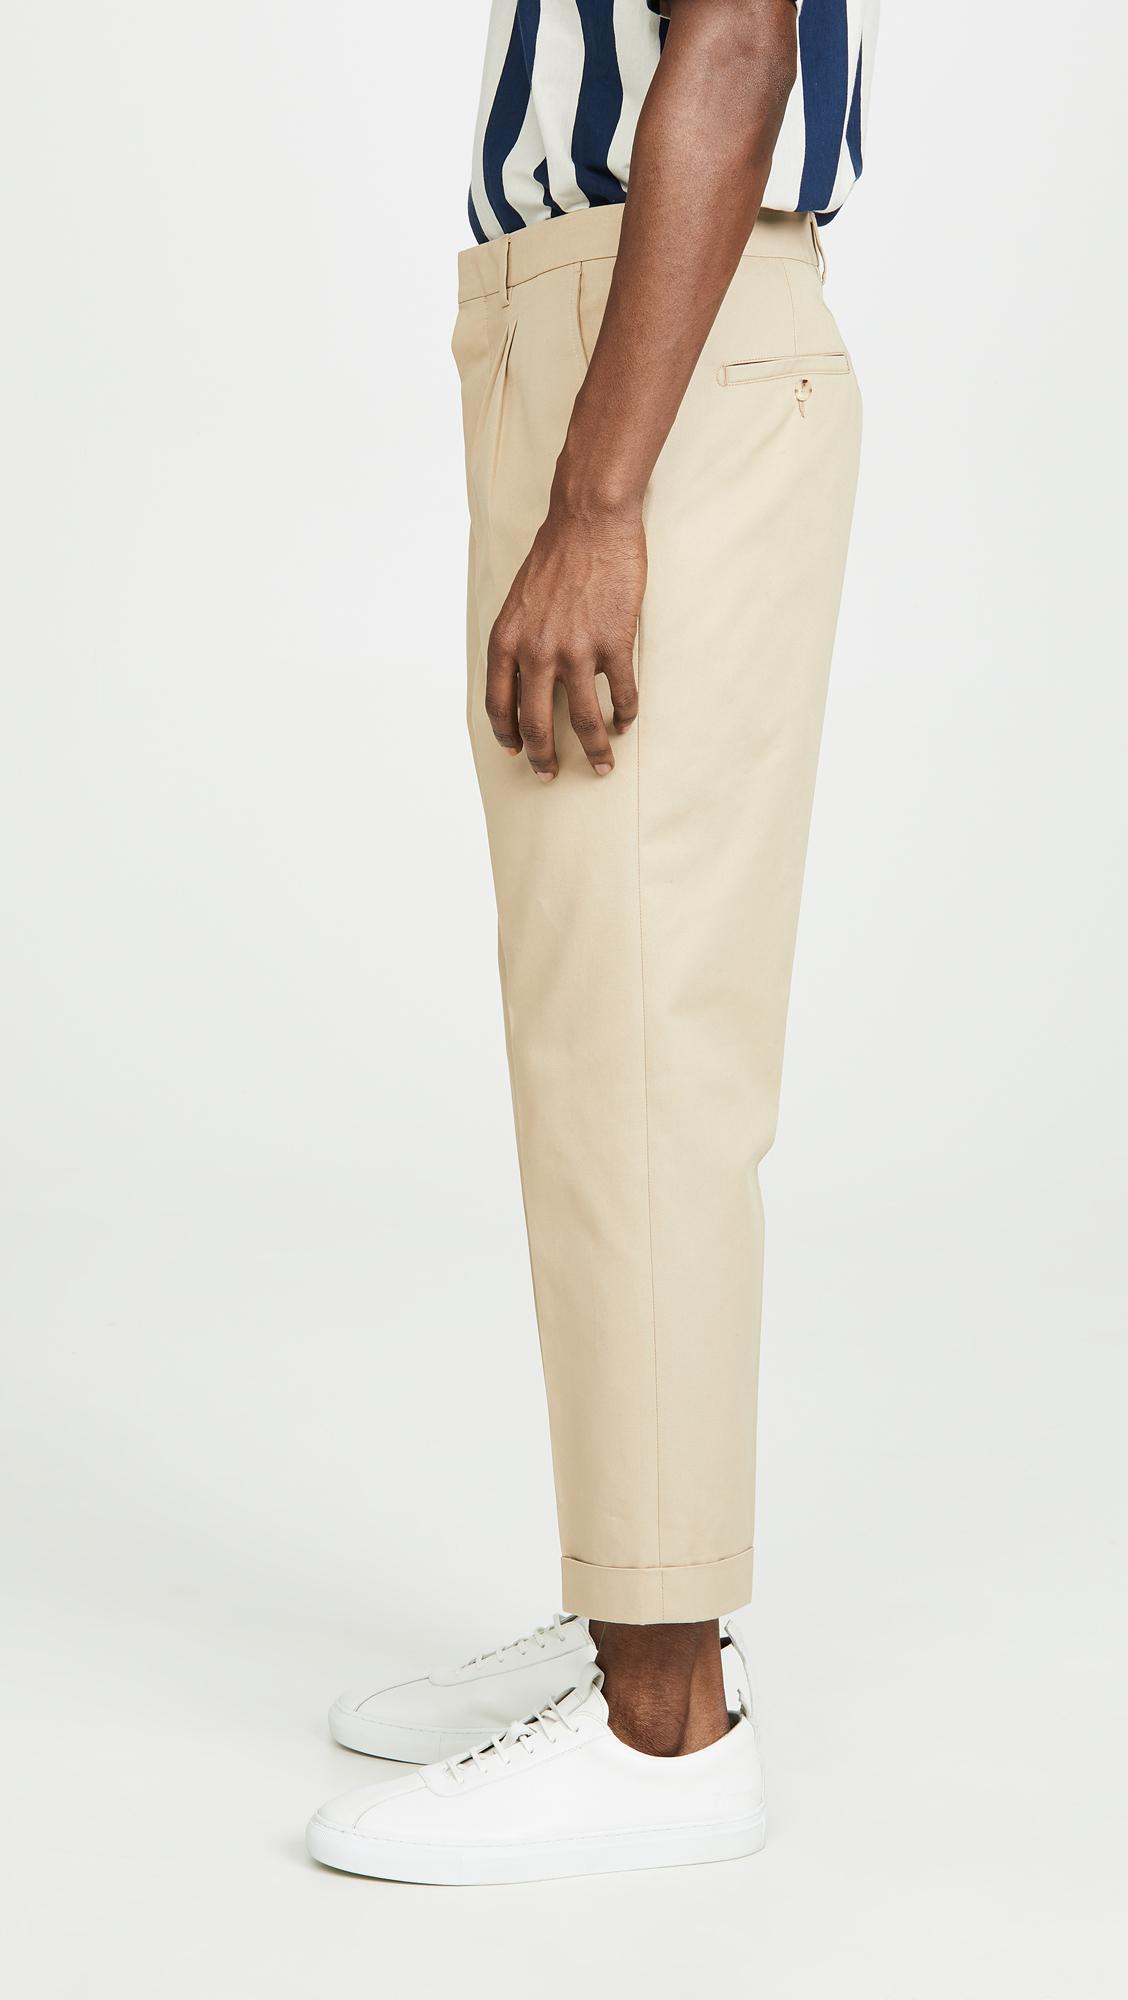 AMI Cotton Pantalon Carotte A Plis Pants in Beige (Natural) for Men - Lyst